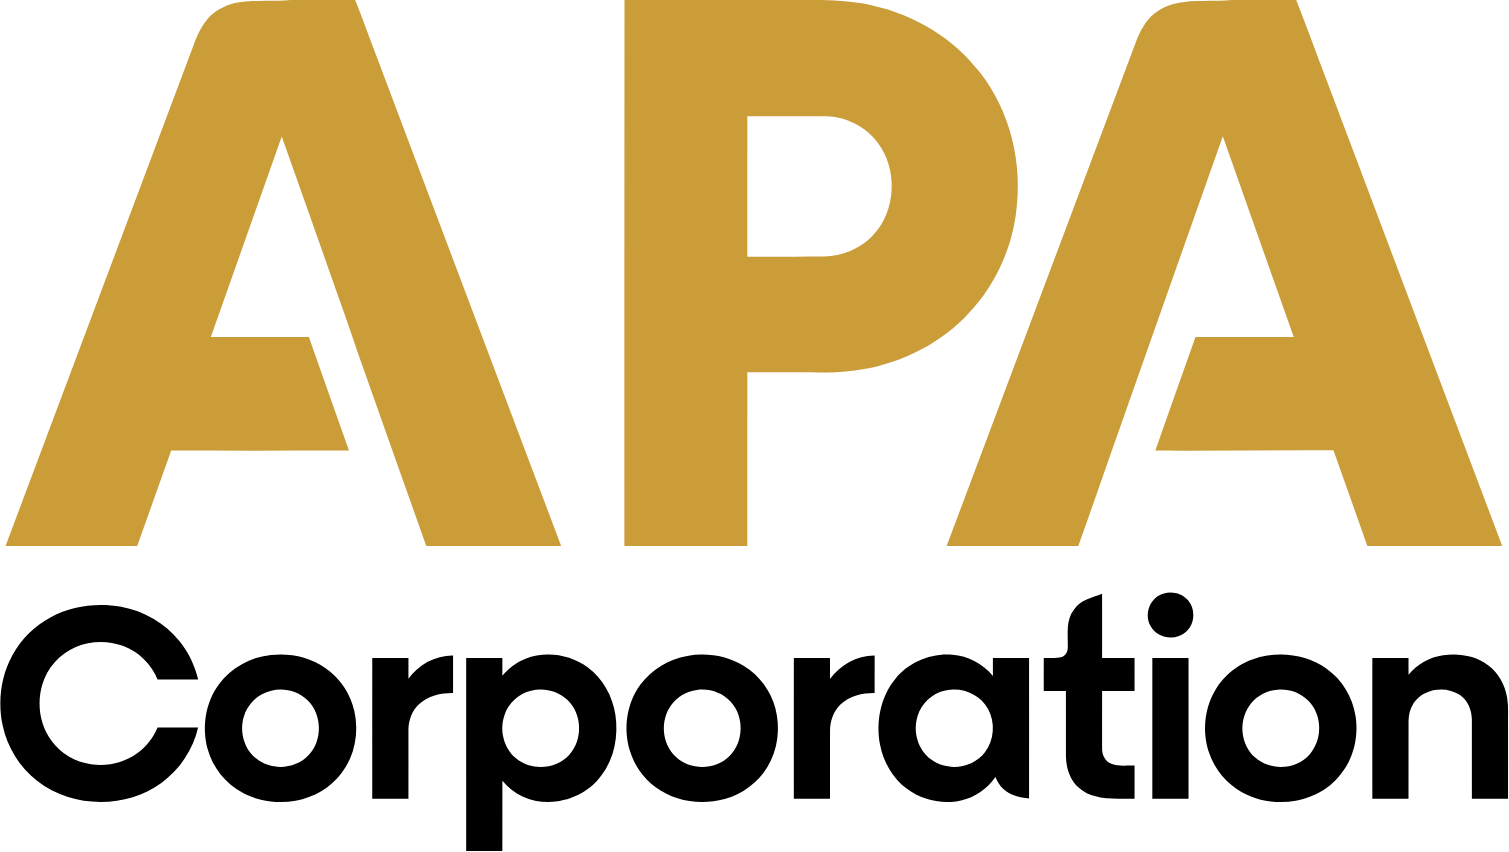 Apache Corporation logo large (transparent PNG)